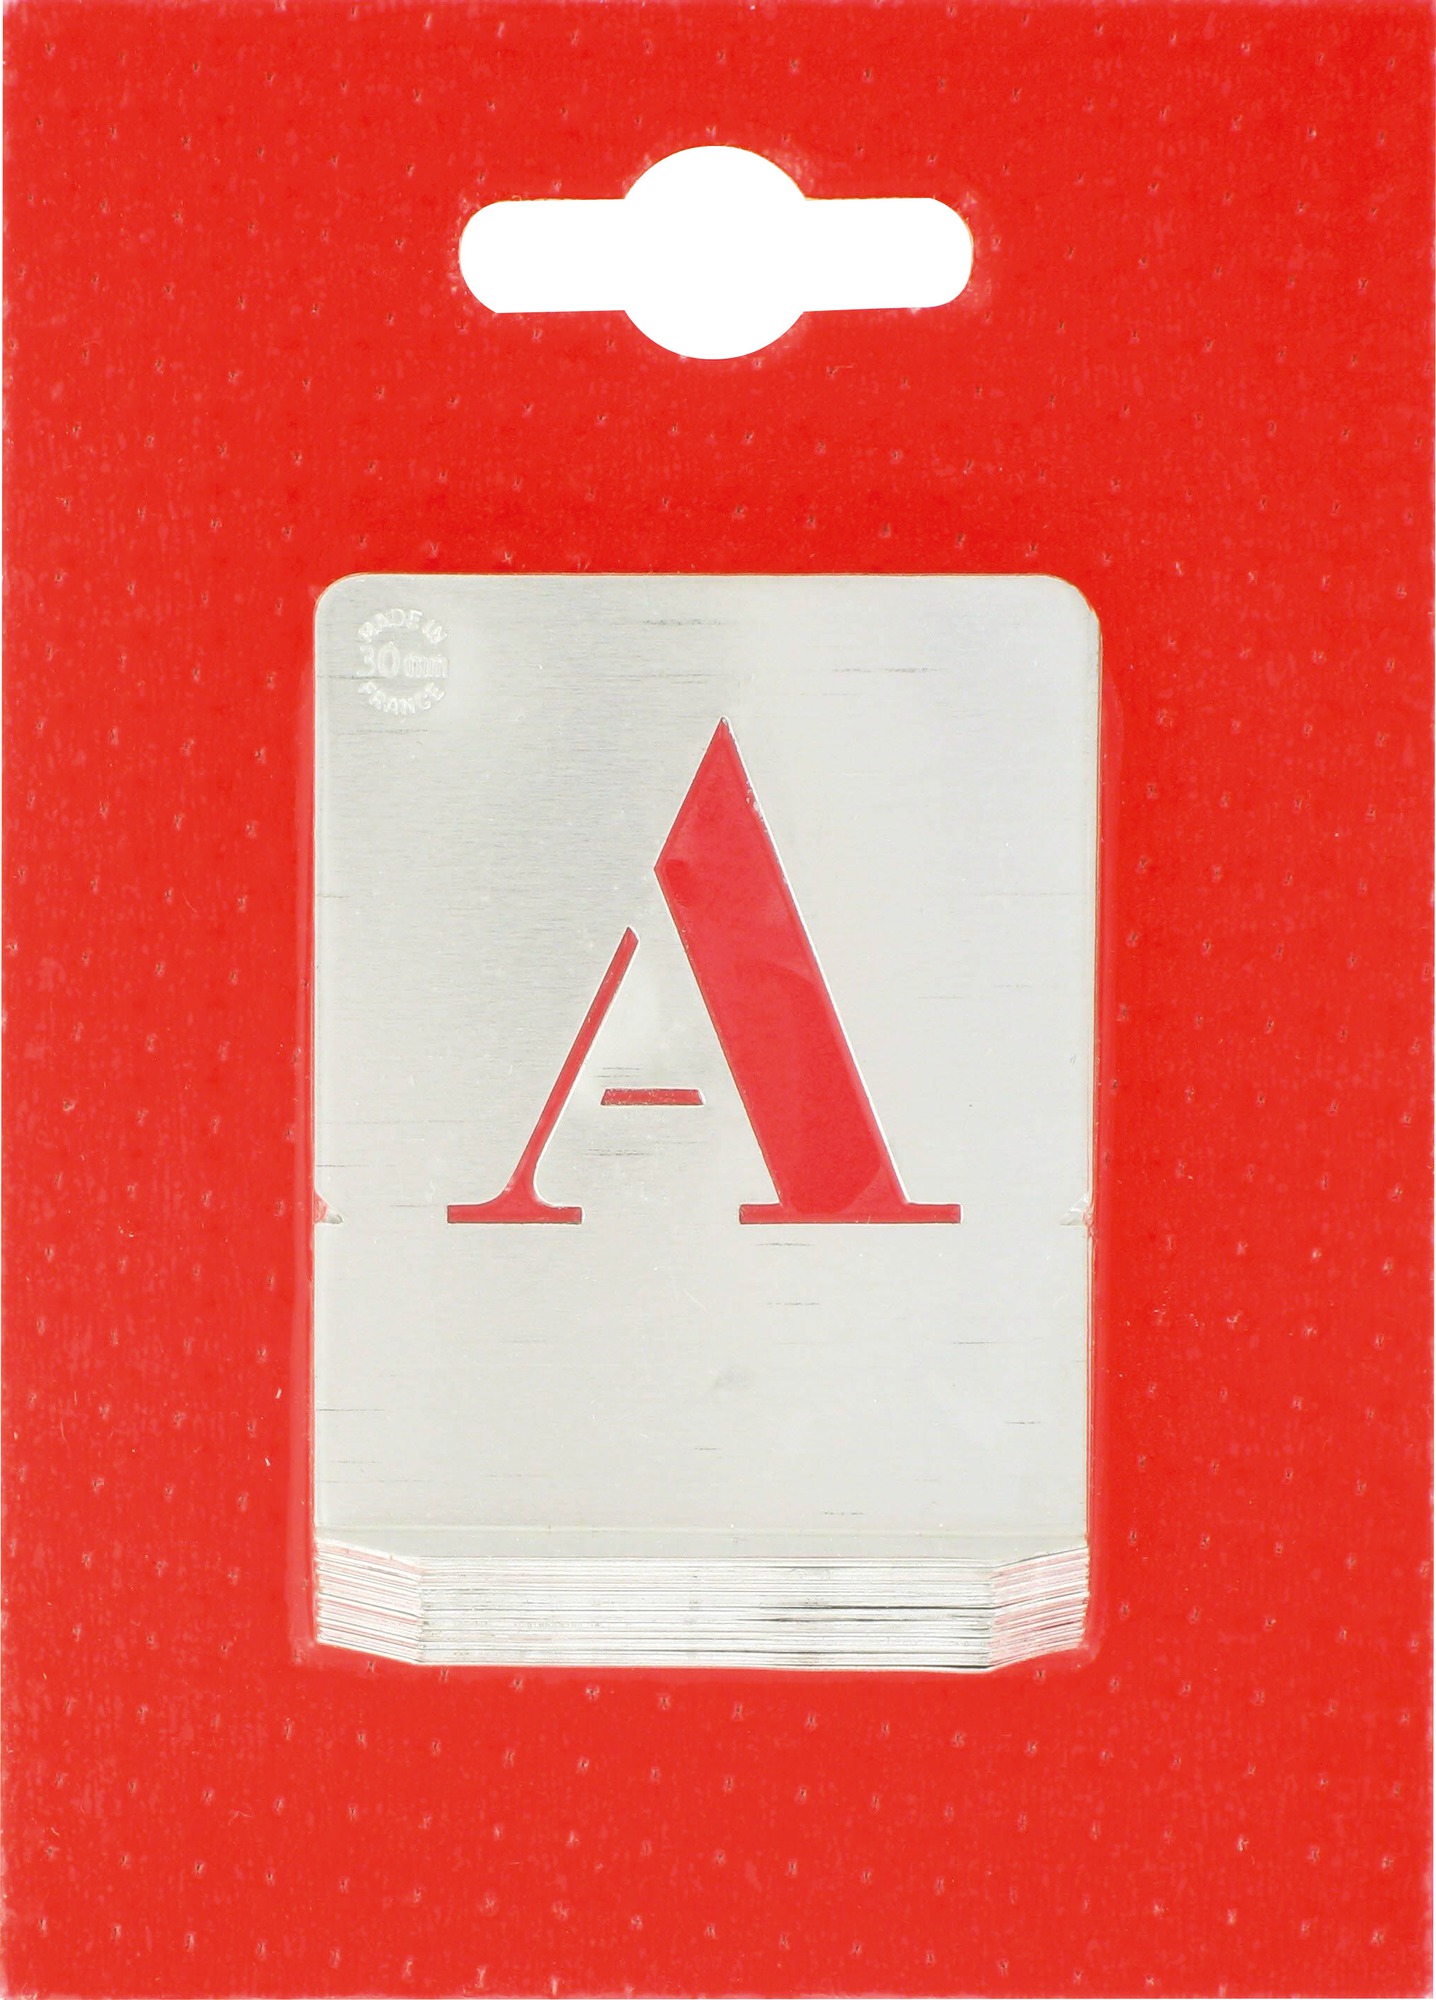 Jeu de lettres pochoirs alphabet aluminium ajouré Uny - Dimensions 30 mm